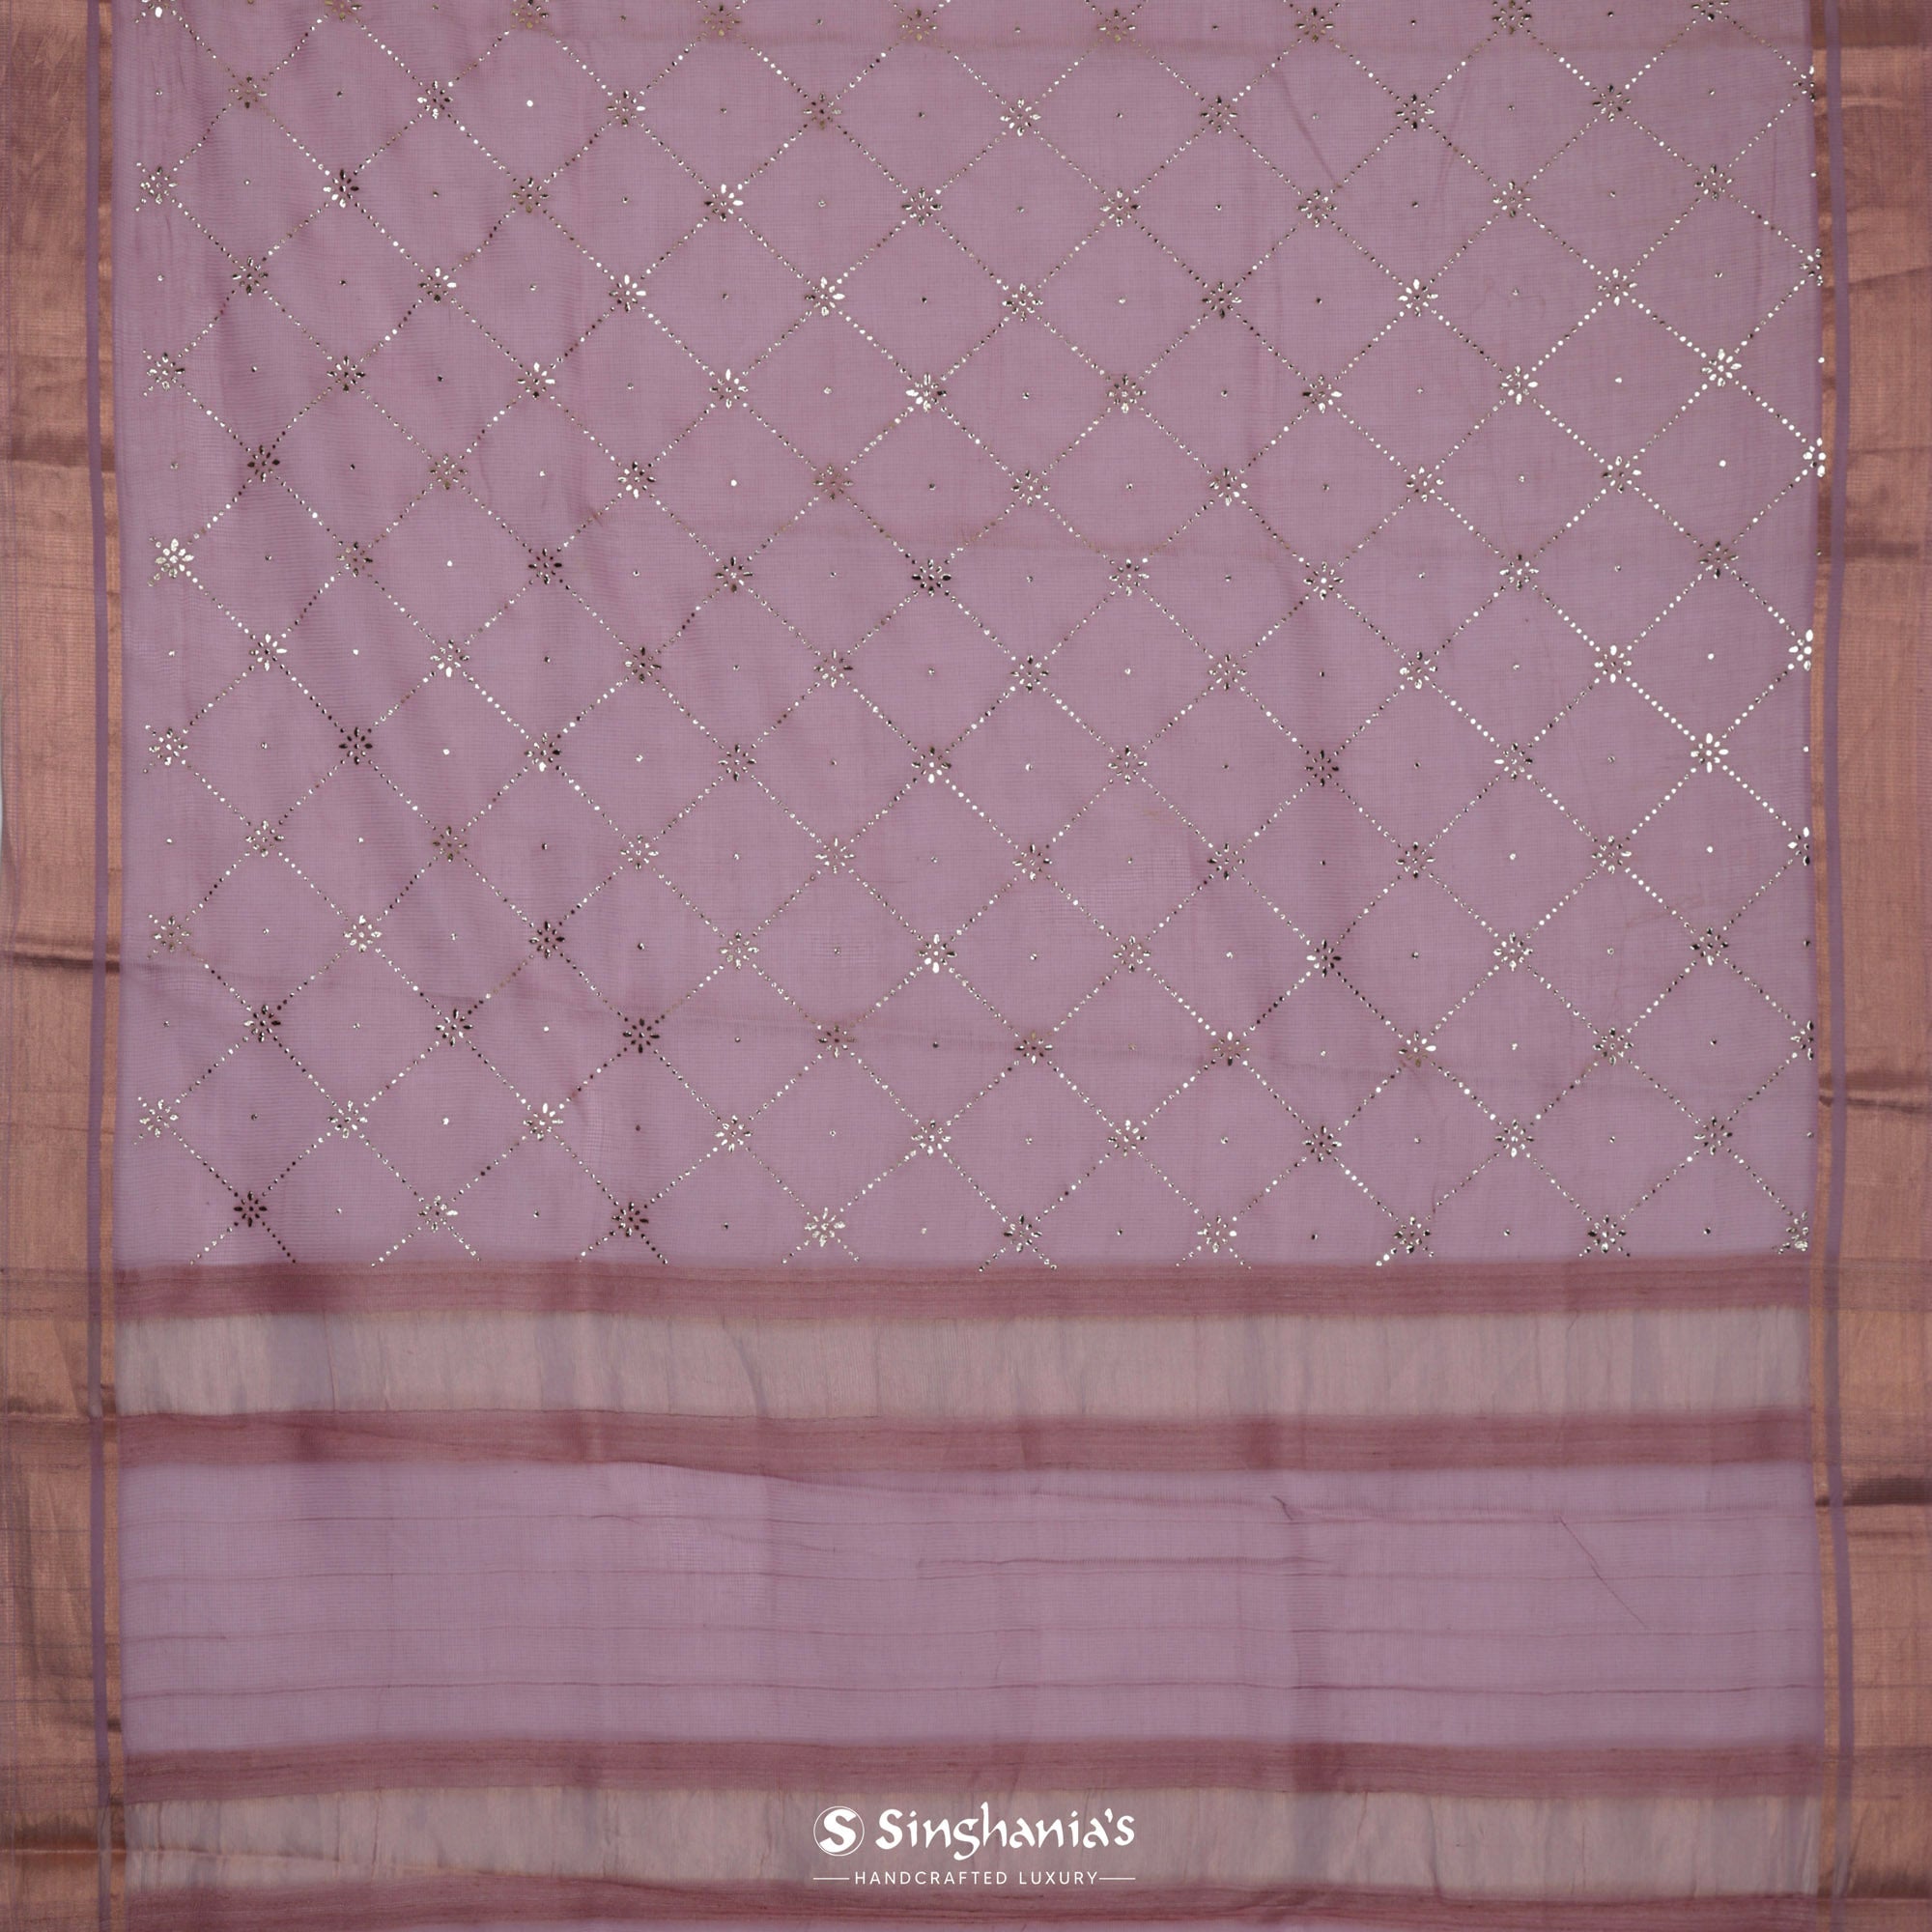 Light Pink Kota Silk Saree With Mukaish Work In Grid Pattern